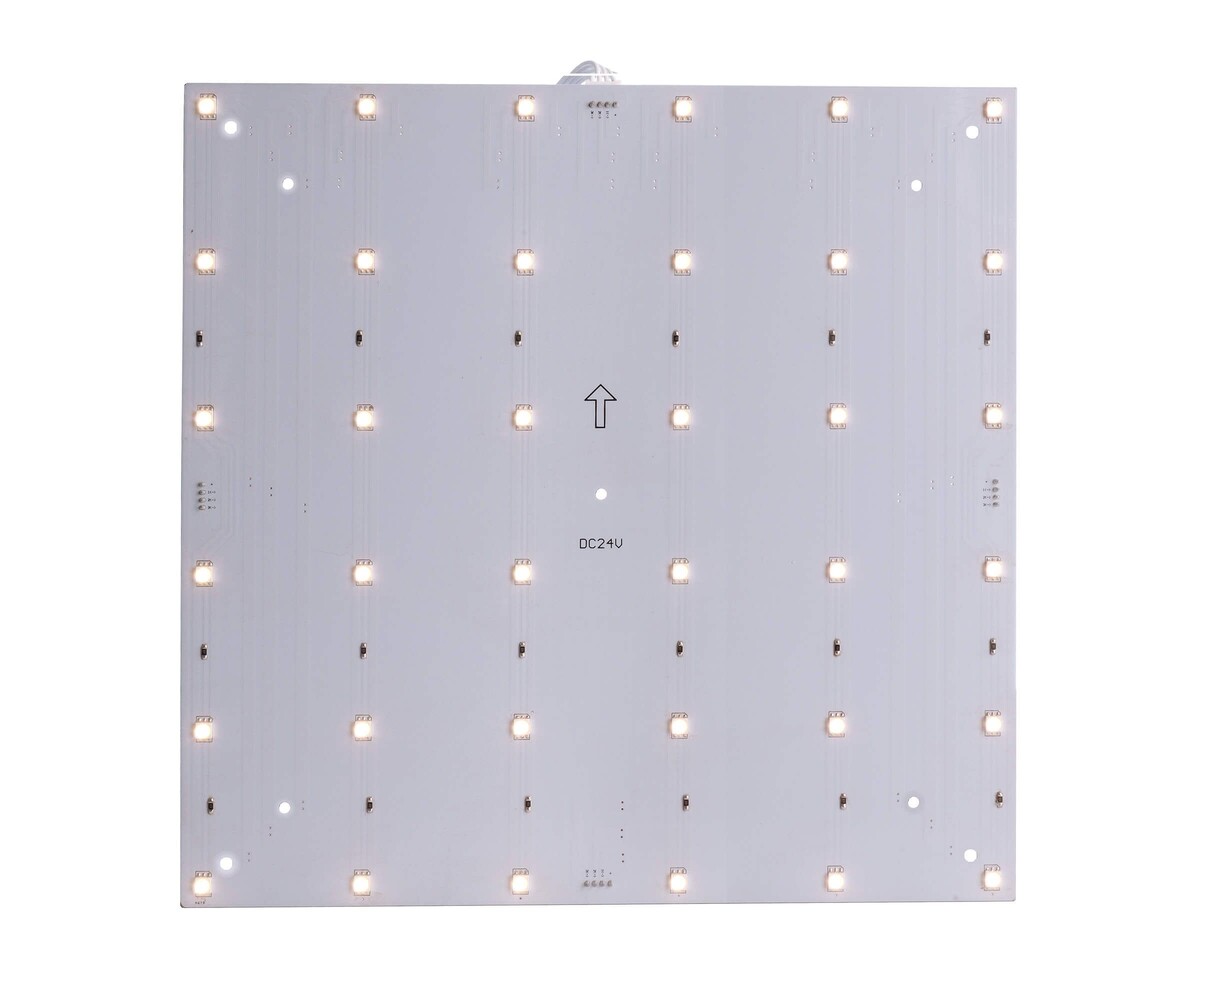 Innovatives LED Panel von Deko-Light, hervorragend geeignet für modulare Systeme, in warmweißer Lichtfarbe